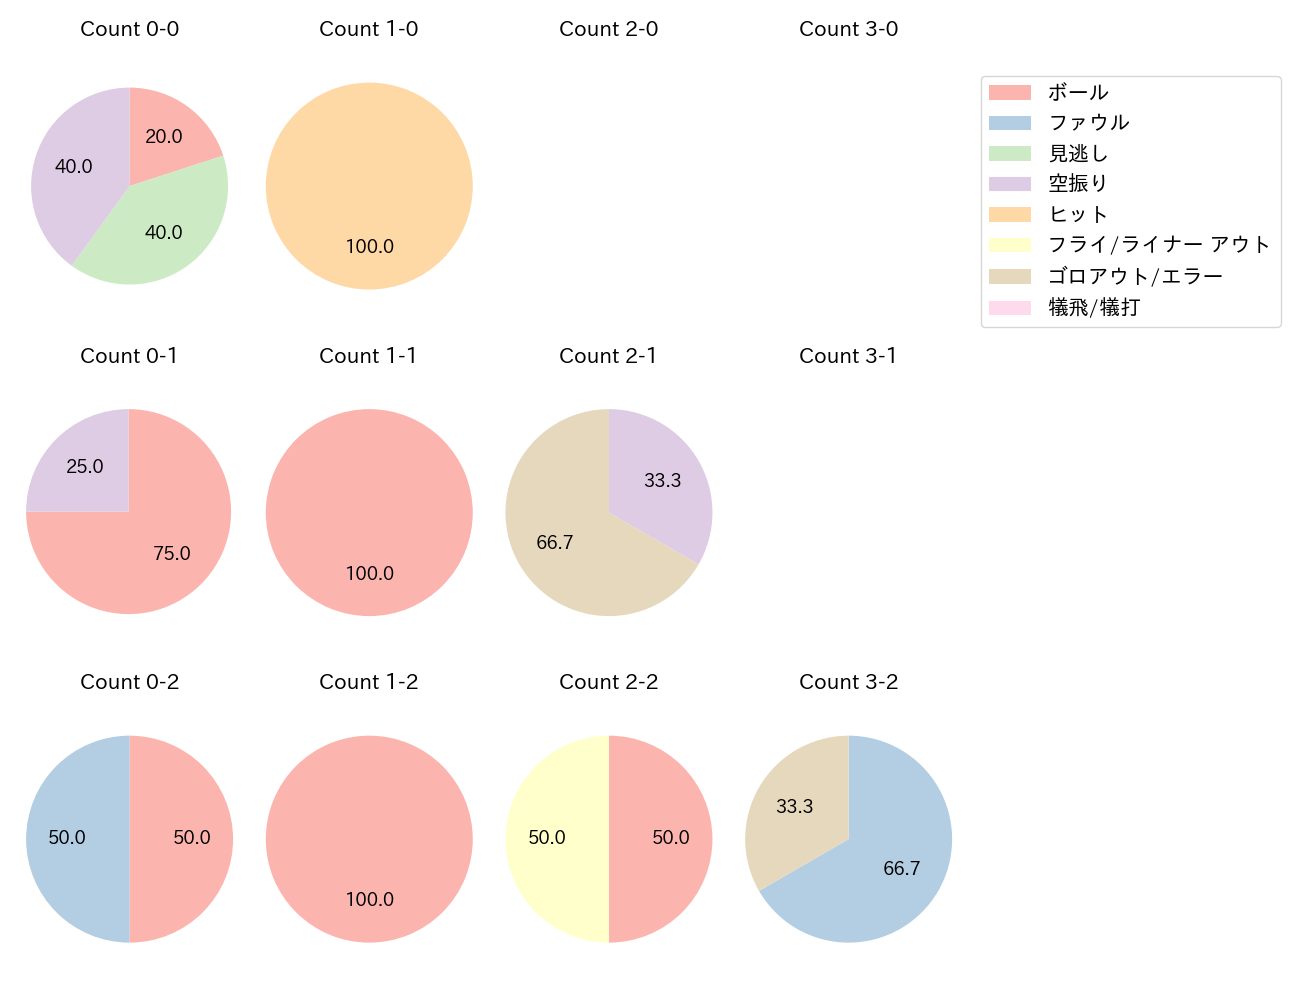 堂林 翔太の球数分布(2021年6月)